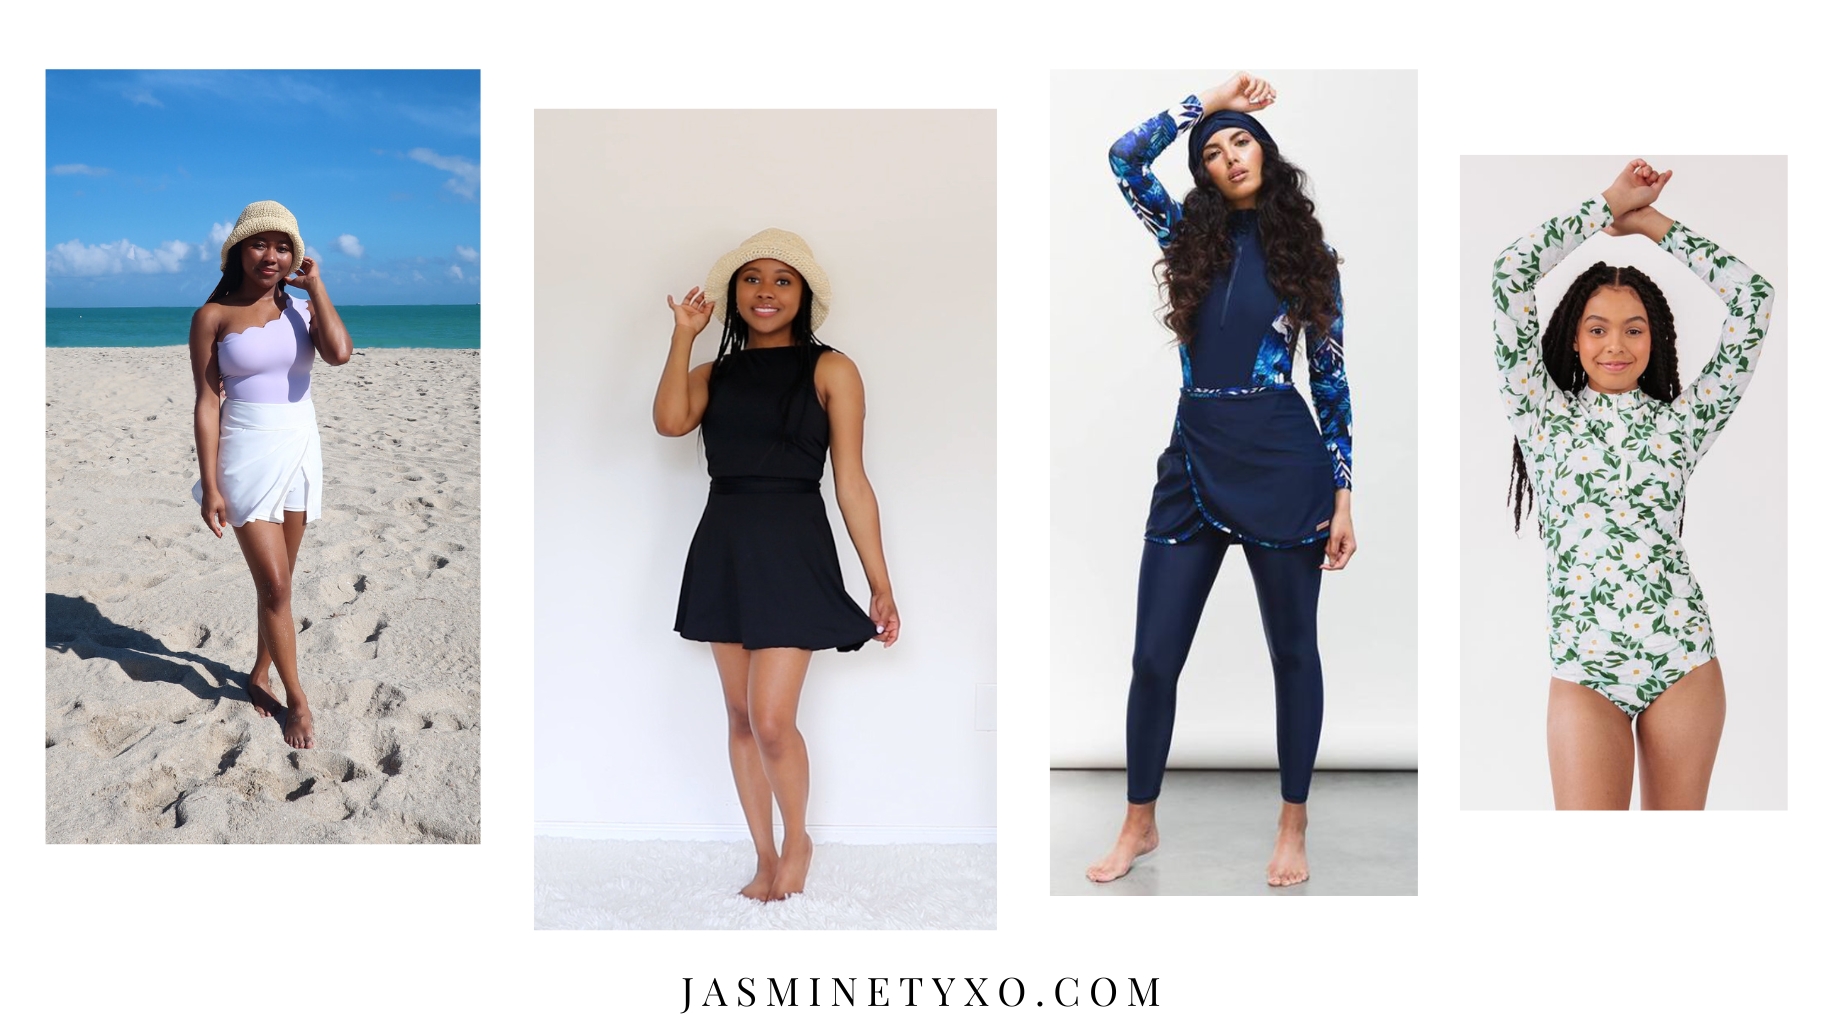 Shopping for Modest Swimwear - Jasmine Ty